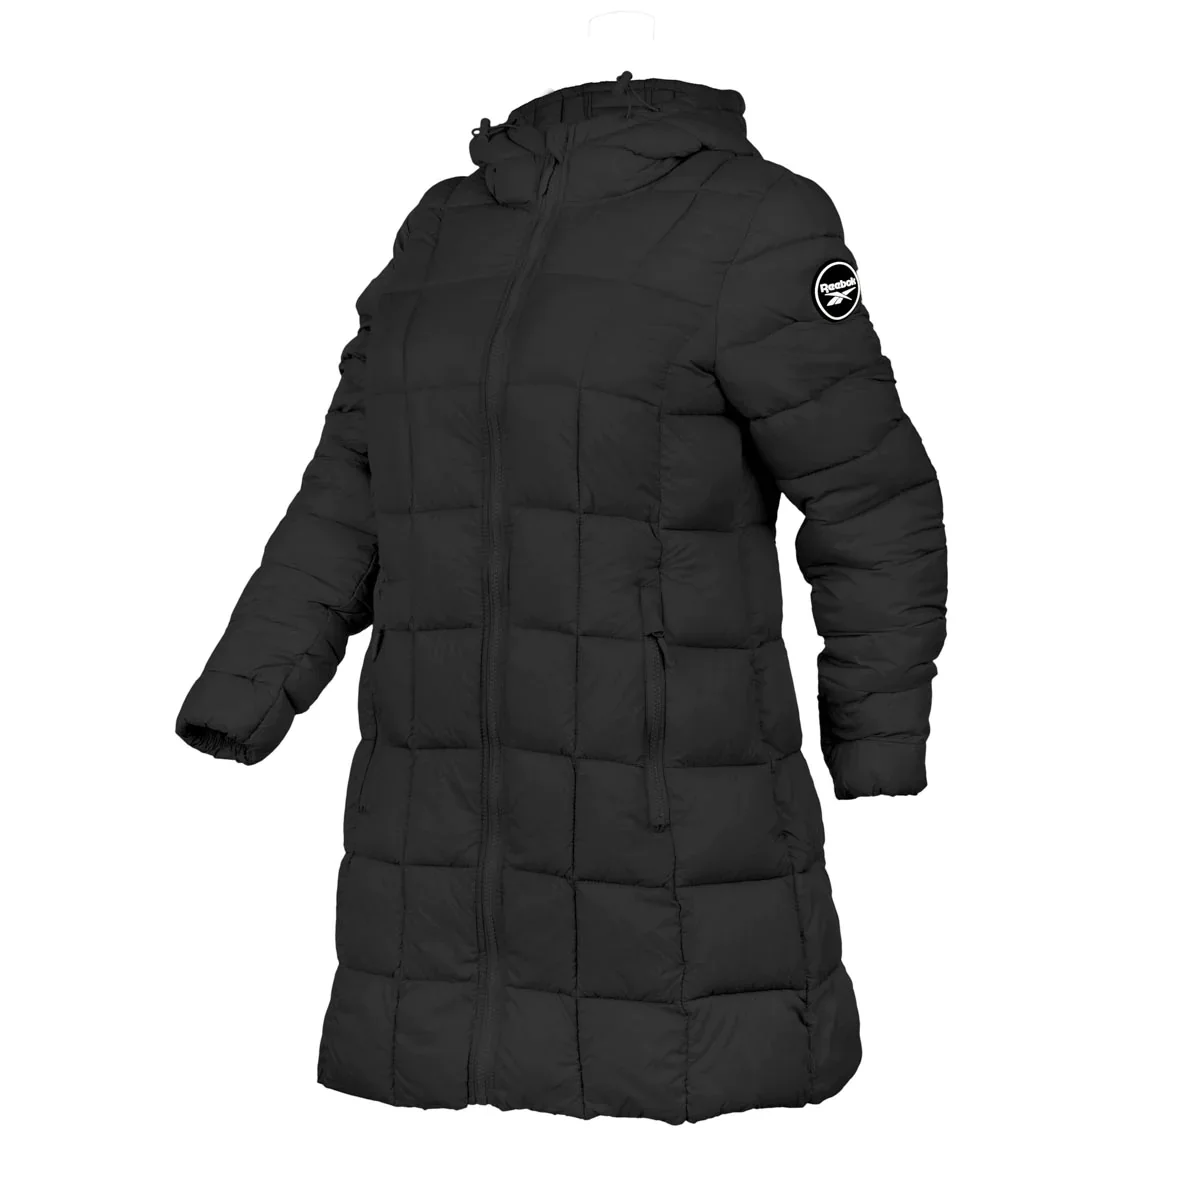 Image of Reebok Women's Glacier Shield Long Jacket